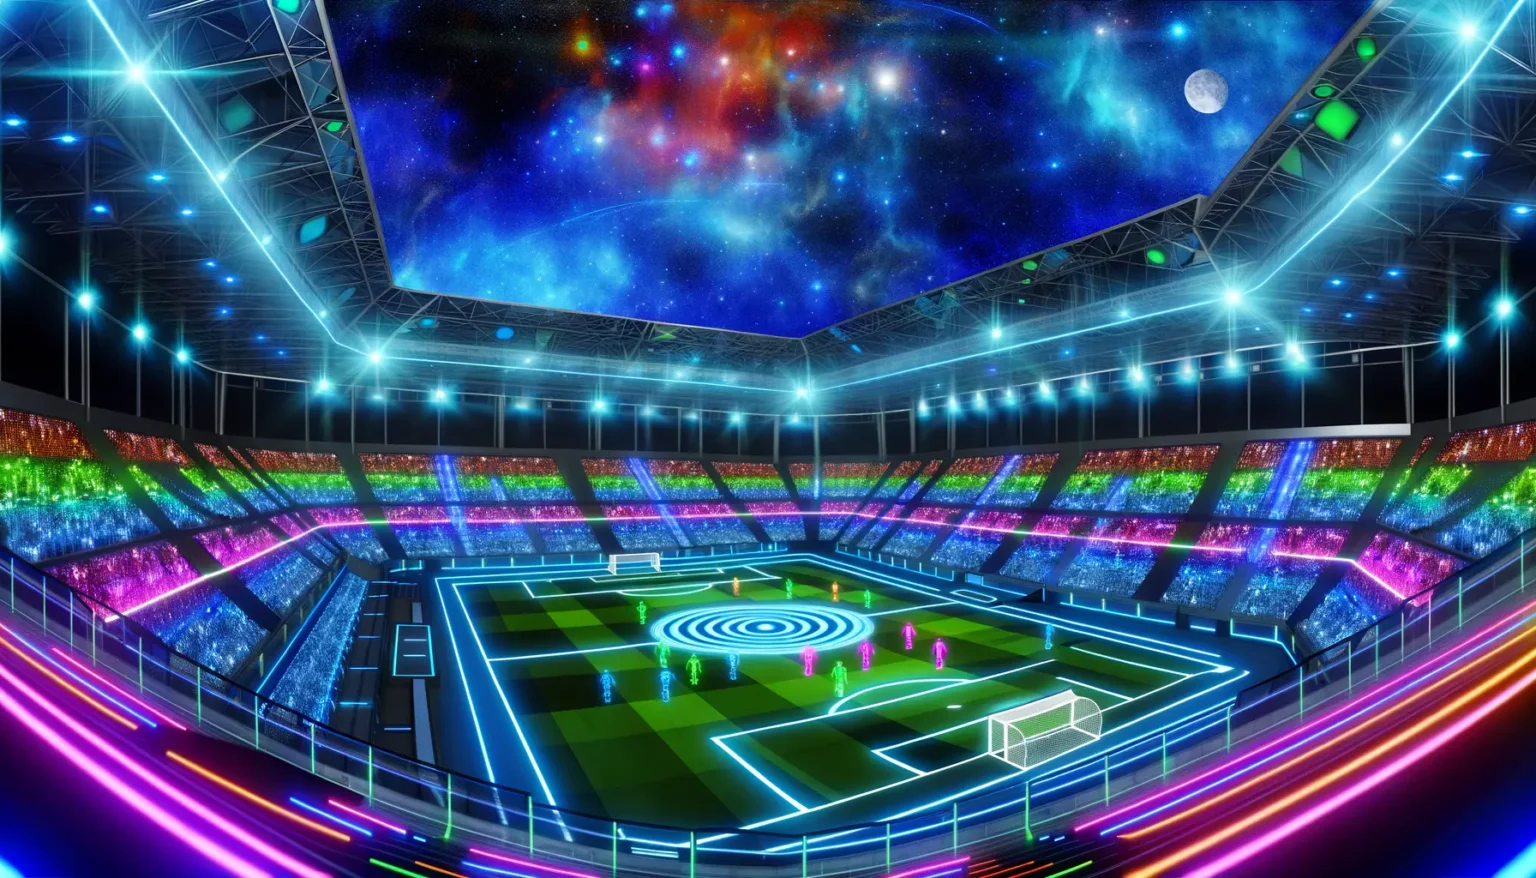 Eine futuristische Darstellung eines beleuchteten Fußballstadions bei Nacht mit einem künstlerisch gestalteten Spielfeld, das leuchtende Farben und Muster zeigt. Die Zuschauerränge sind mit bunten Lichteffekten gefüllt, und über dem Stadion breitet sich ein kosmischer Sternenhimmel mit Galaxien und einem hellen Mond aus. Lichtstrahlen in verschiedenen Farben ziehen sich dynamisch durch das Bild und verleihen der Szene eine energiegeladene und außerweltliche Atmosphäre.